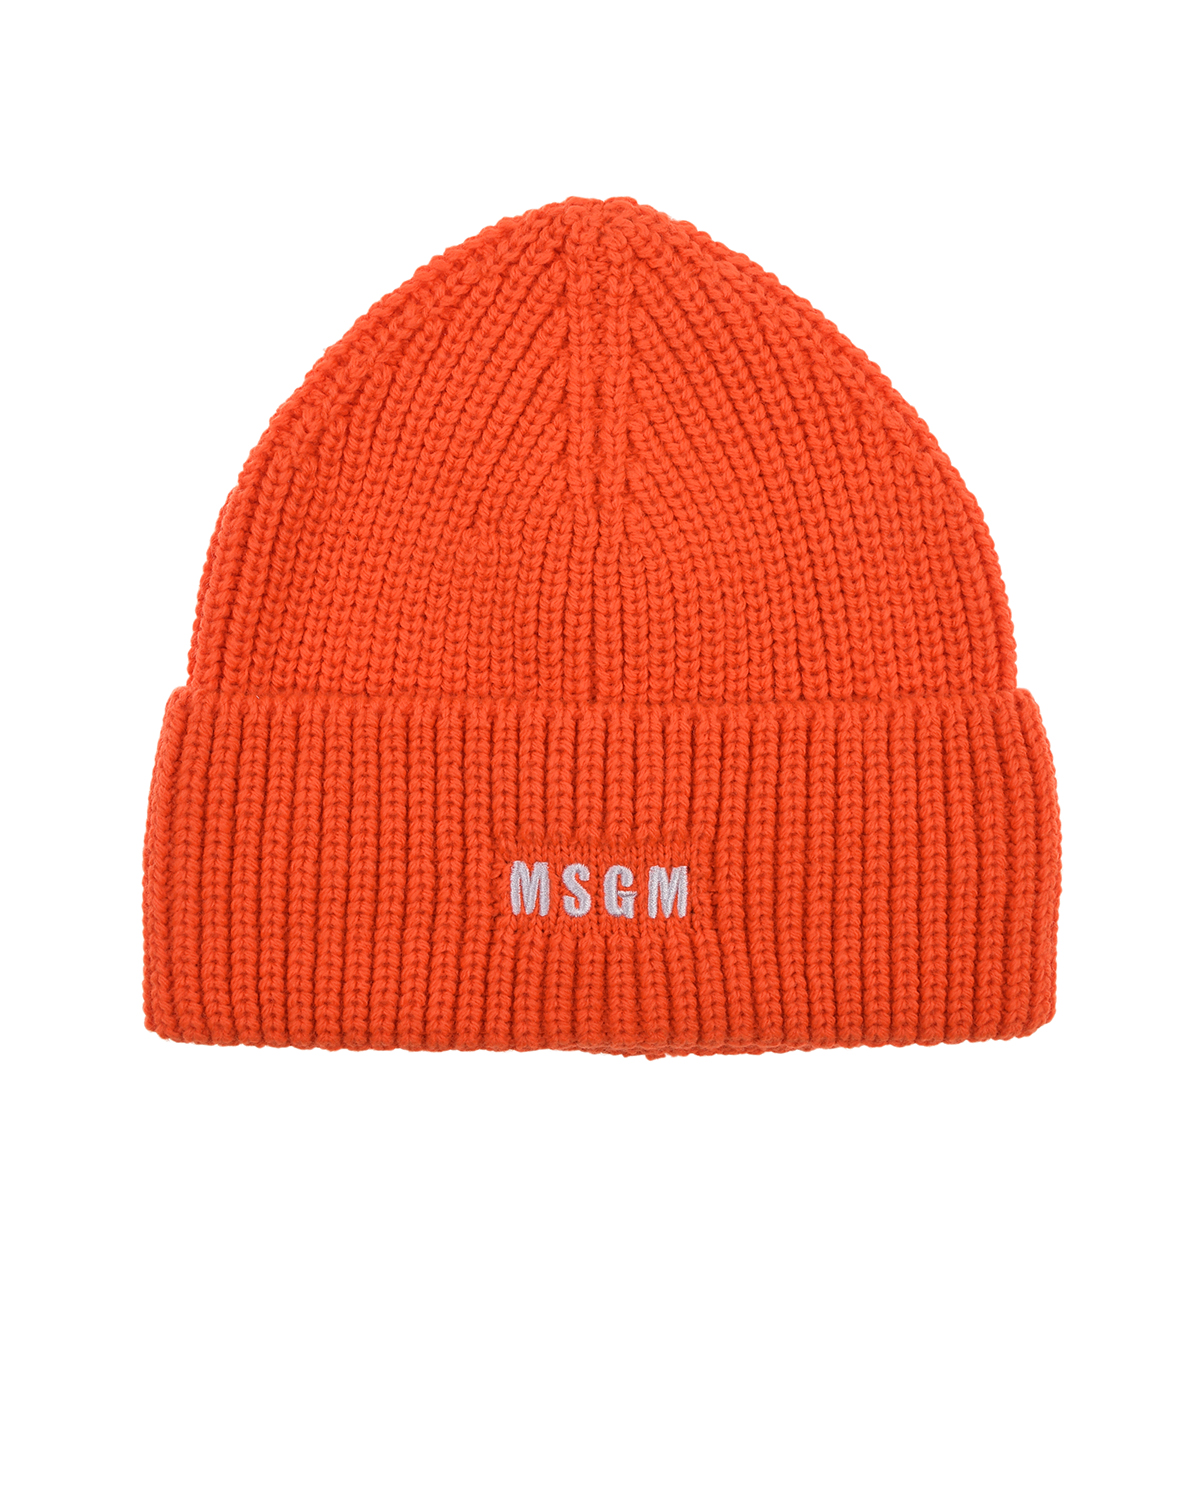 Оранжевая шапка с лого MSGM детская, размер unica, цвет оранжевый